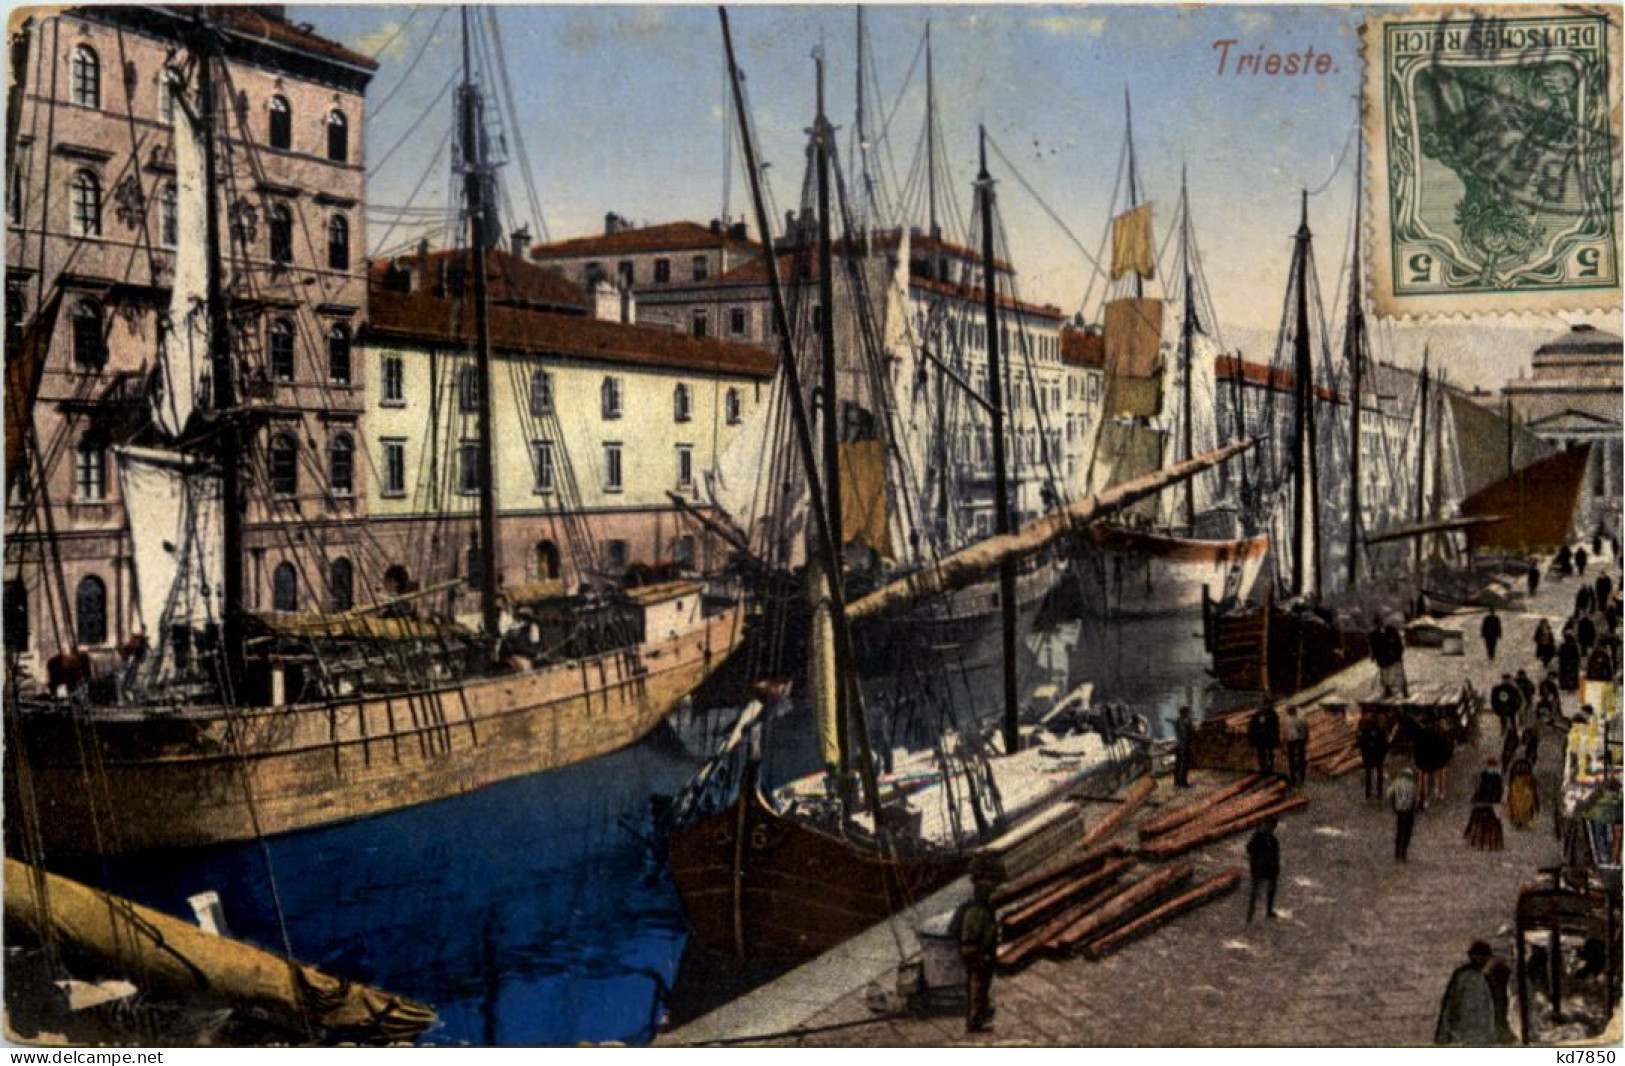 Trieste - Trieste